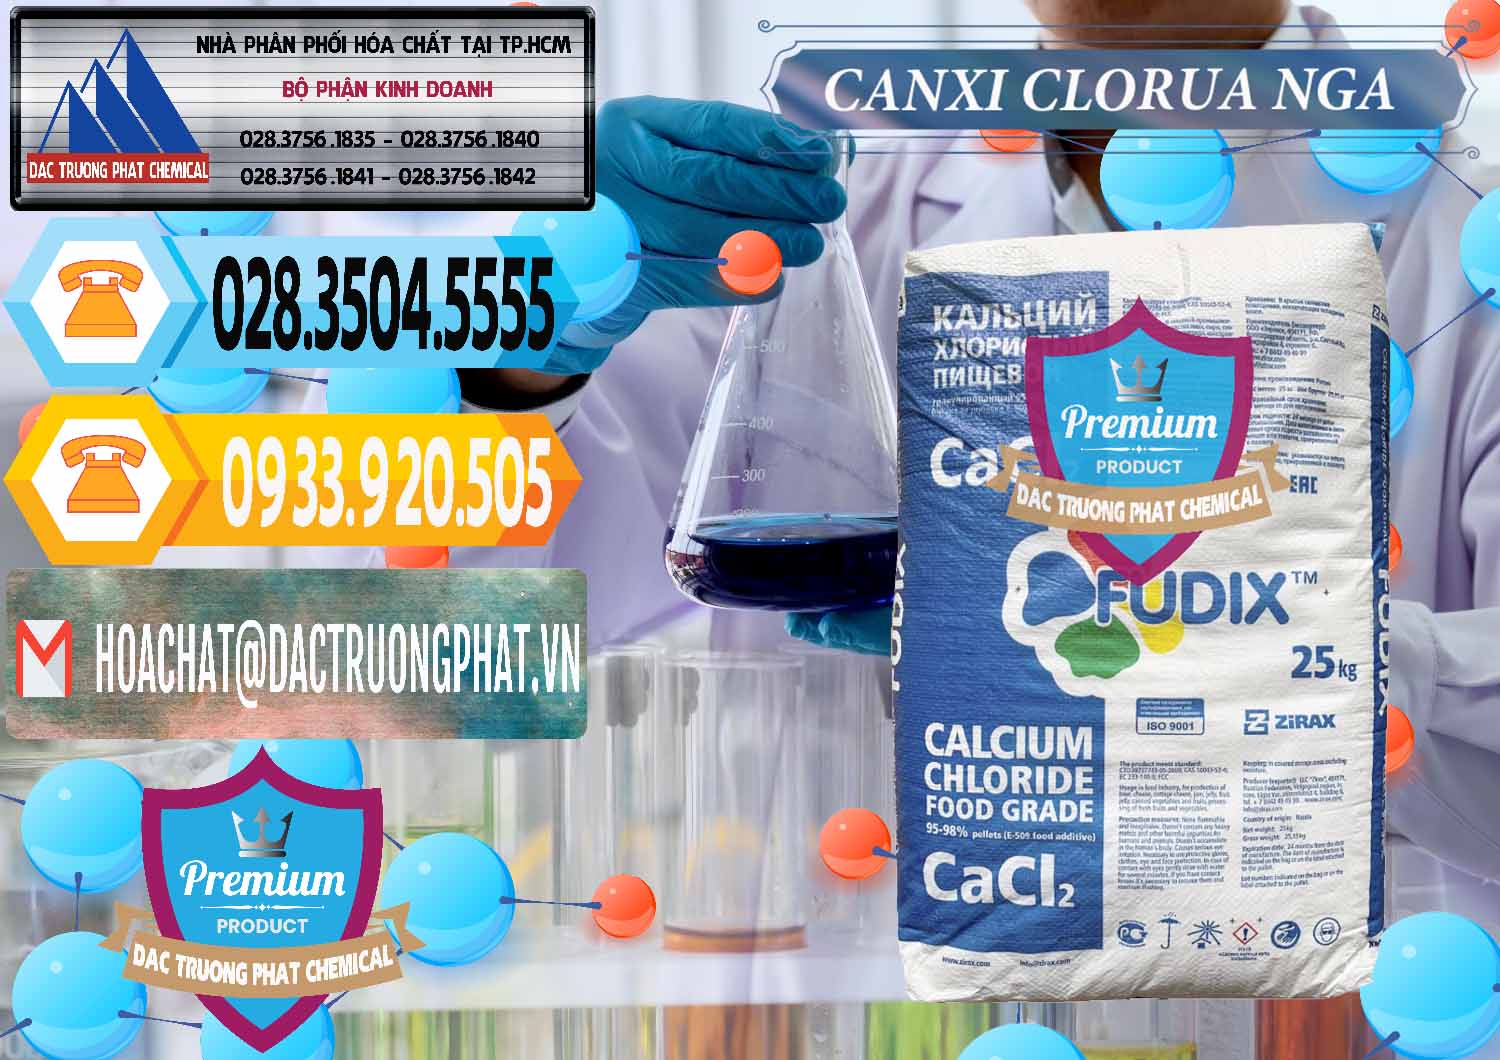 Công ty nhập khẩu _ bán CaCl2 – Canxi Clorua Nga Russia - 0430 - Cung cấp và phân phối hóa chất tại TP.HCM - hoachattayrua.net